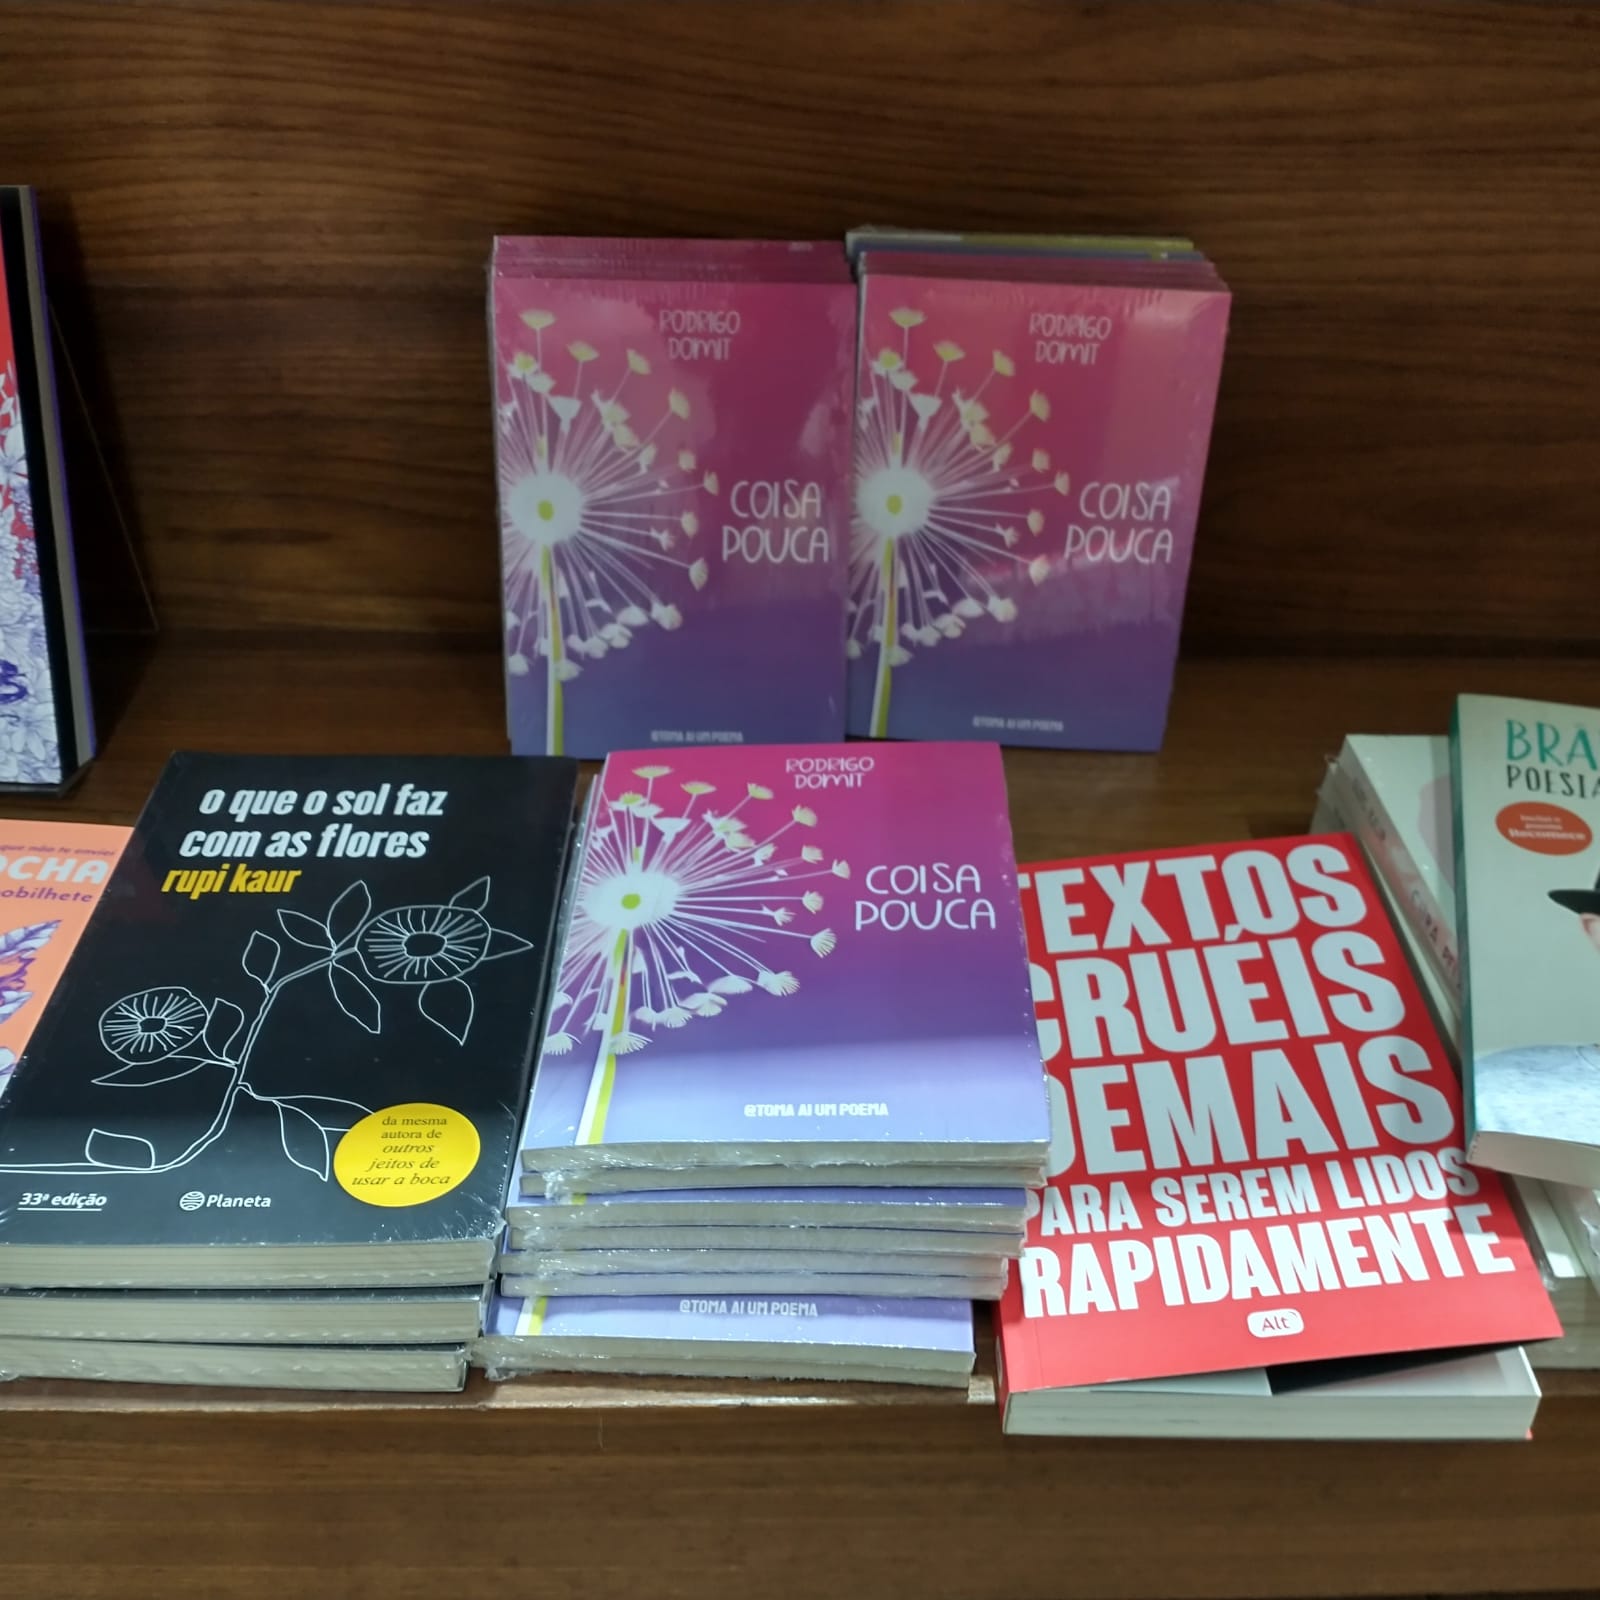 Lançamento ocorreu na Bienal Internacional do Livro em Jaraguá do Sul.